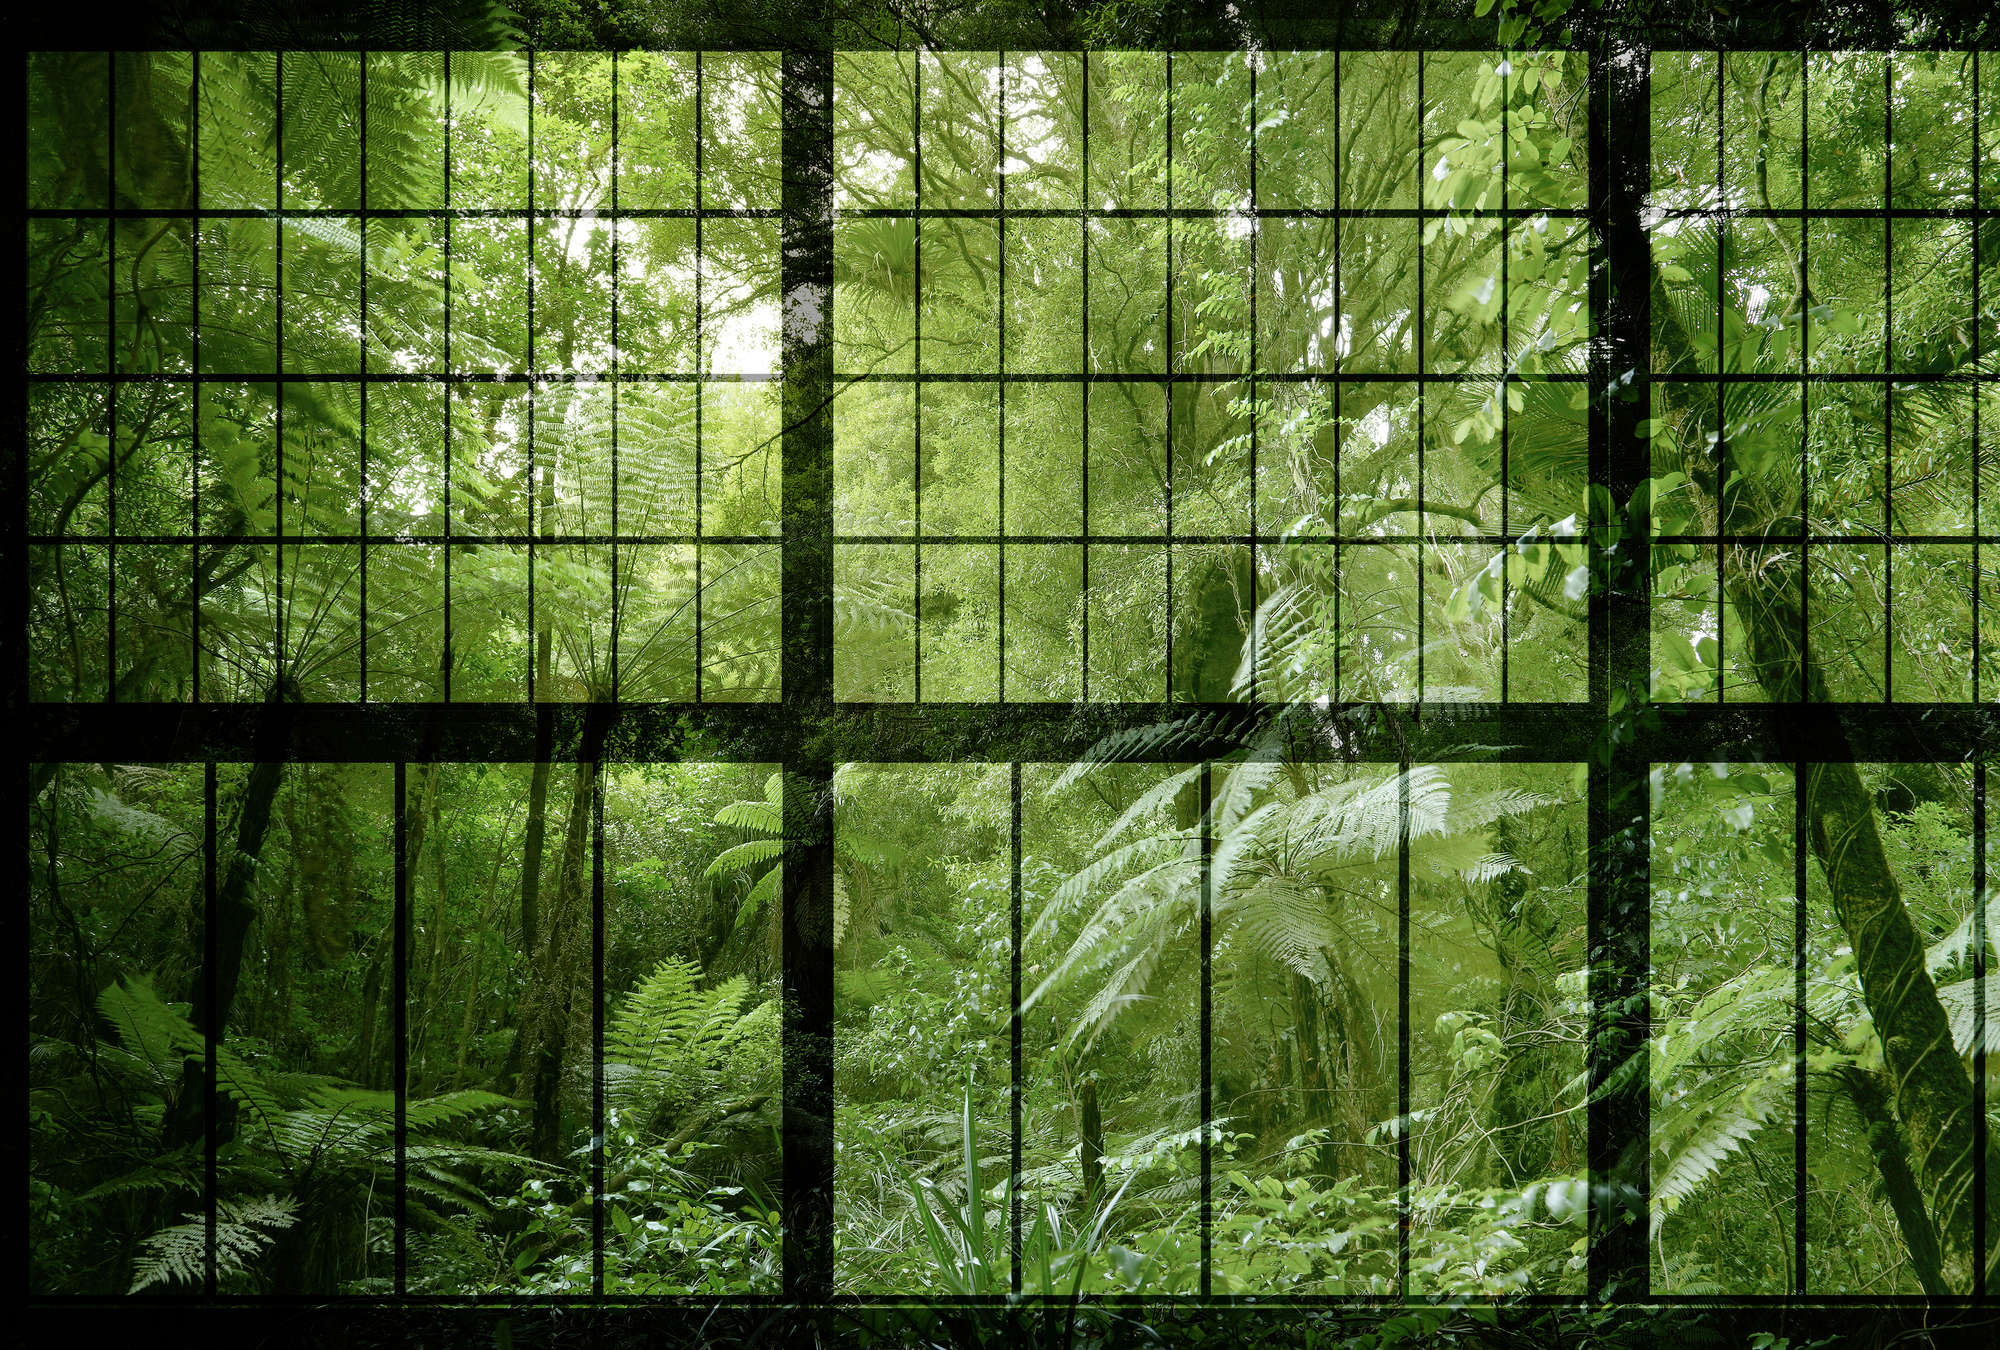             Rainforest 2 - Loft Window Wallpaper with Jungle View - Green, Black | Premium Smooth Vliesbehang
        